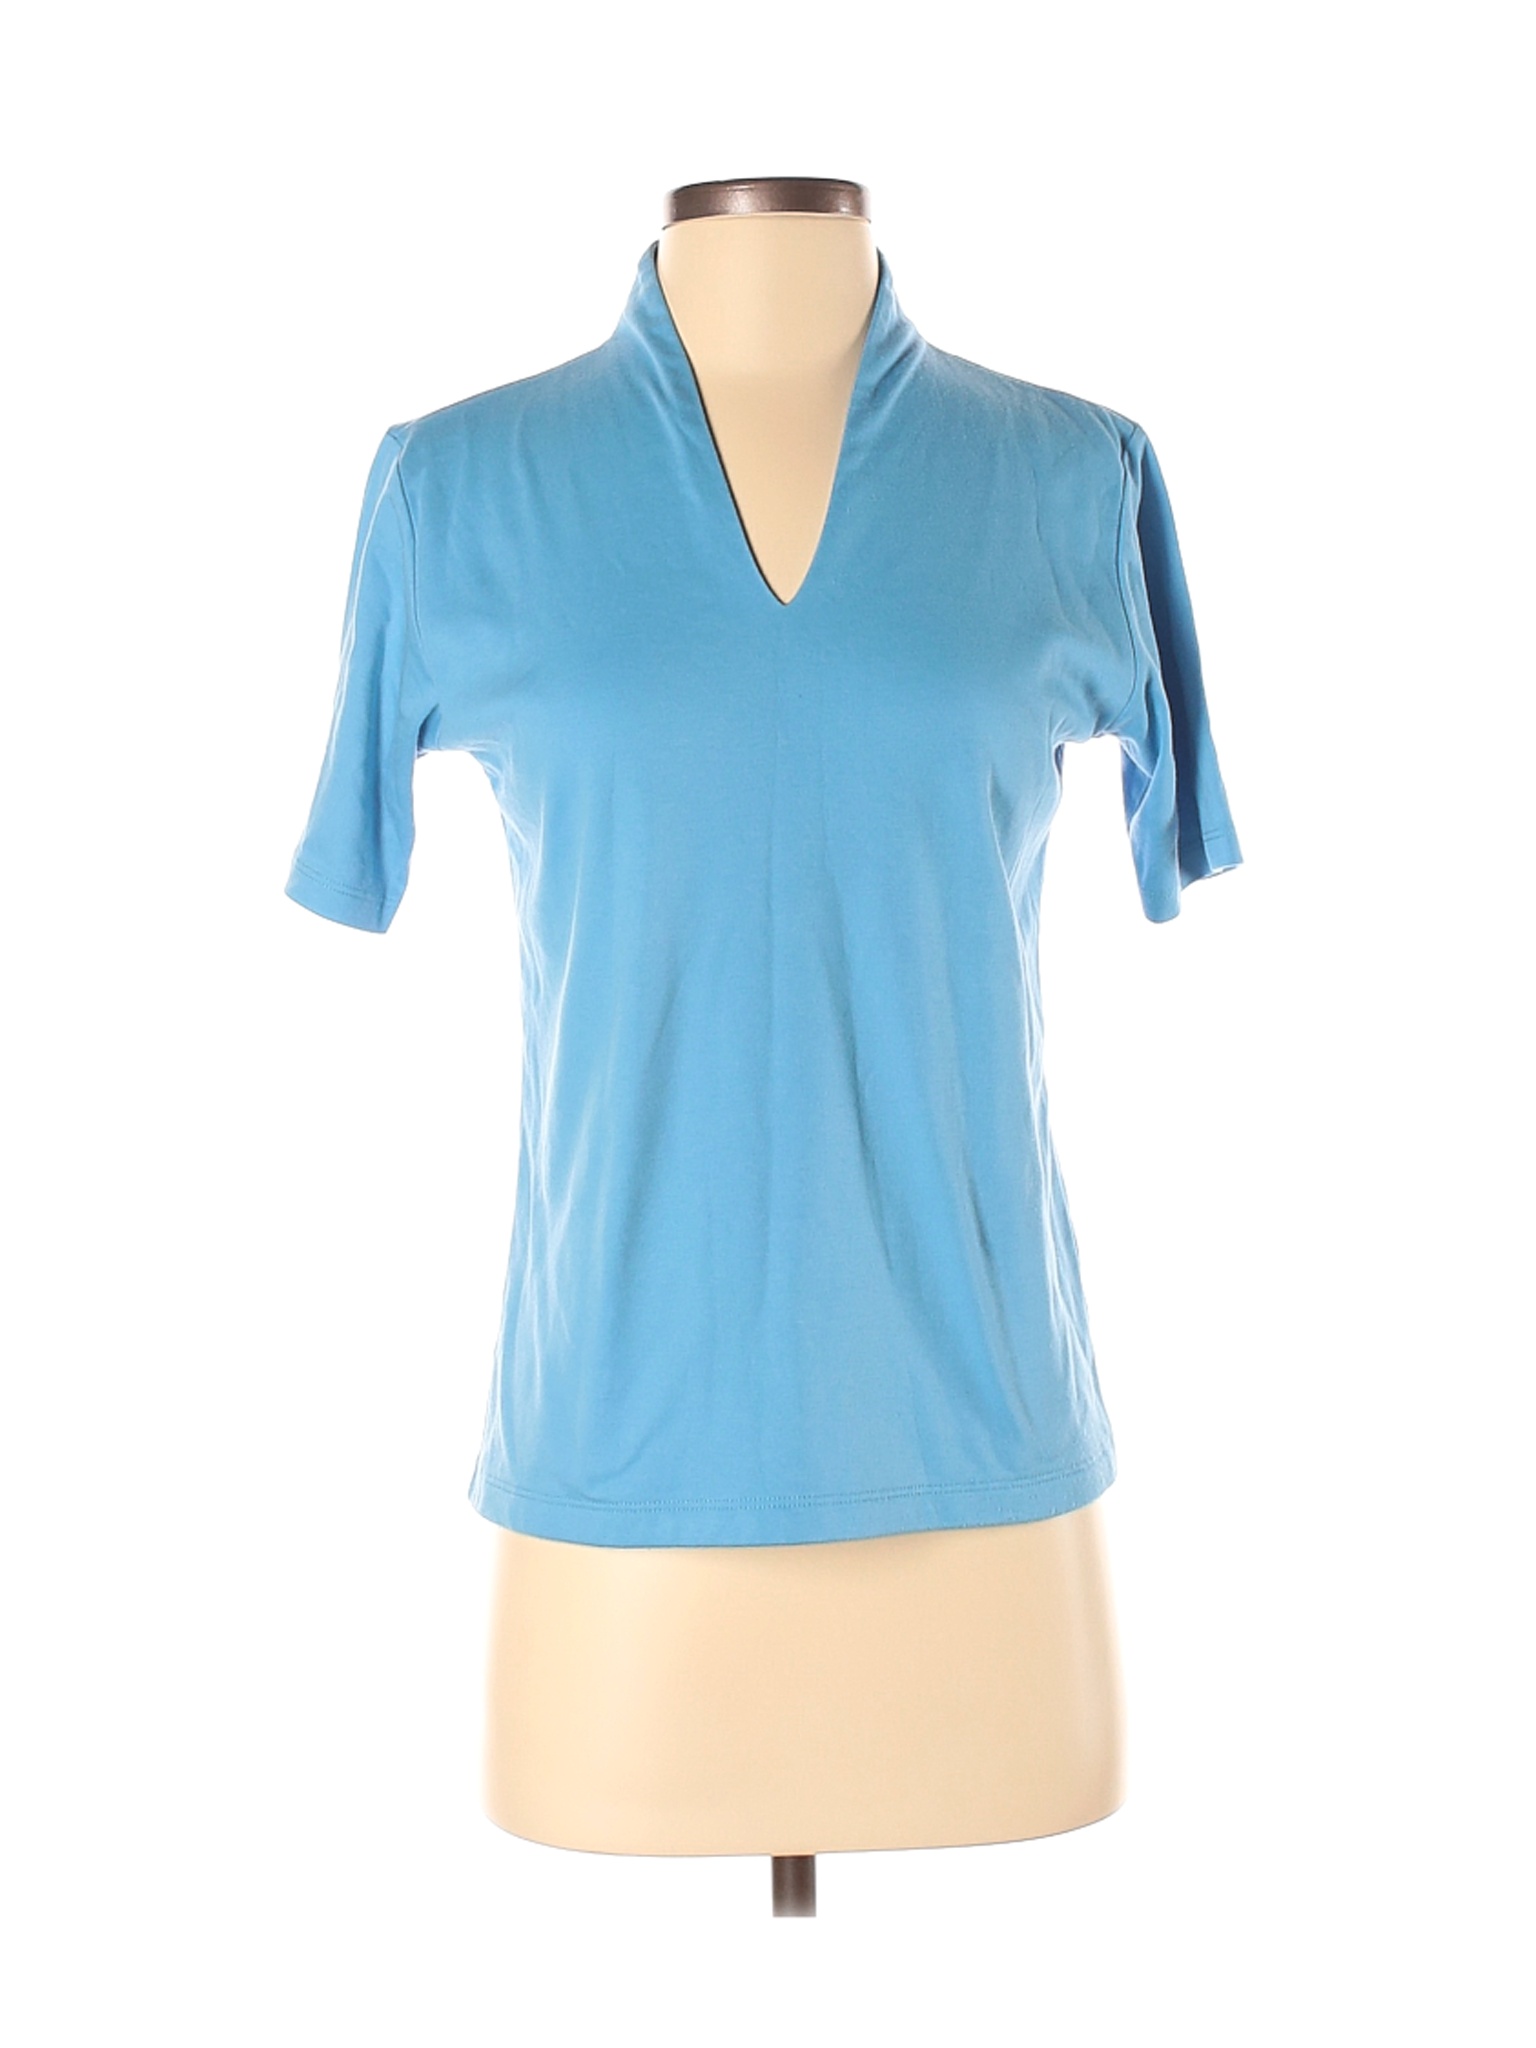 Orvis Women Blue Short Sleeve T-Shirt S | eBay